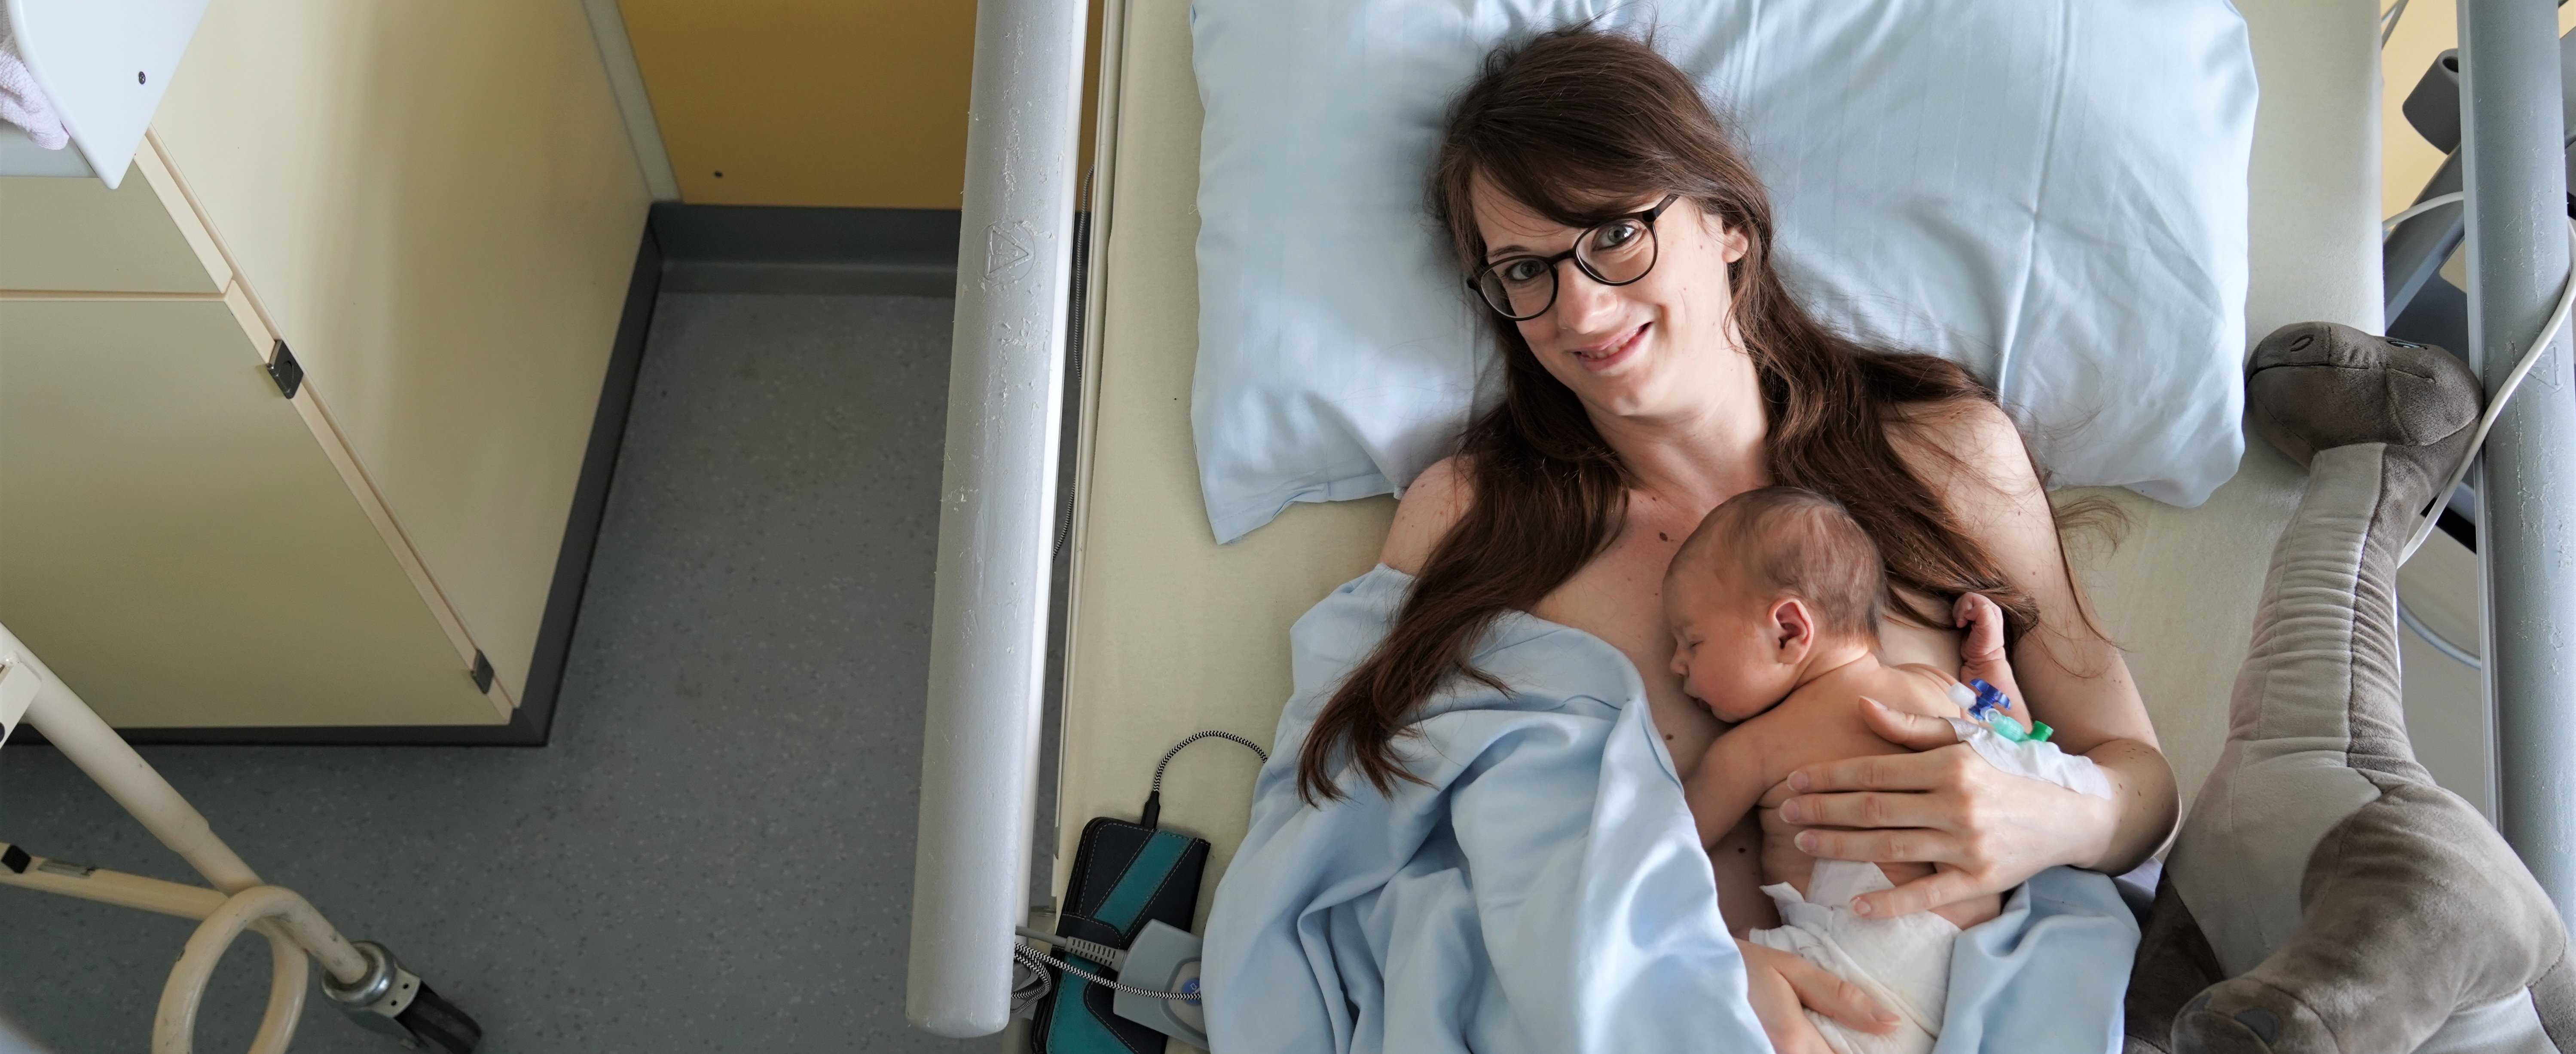 Caroline F. und  ihre Tochter Alina liegen im Krankenhausbett